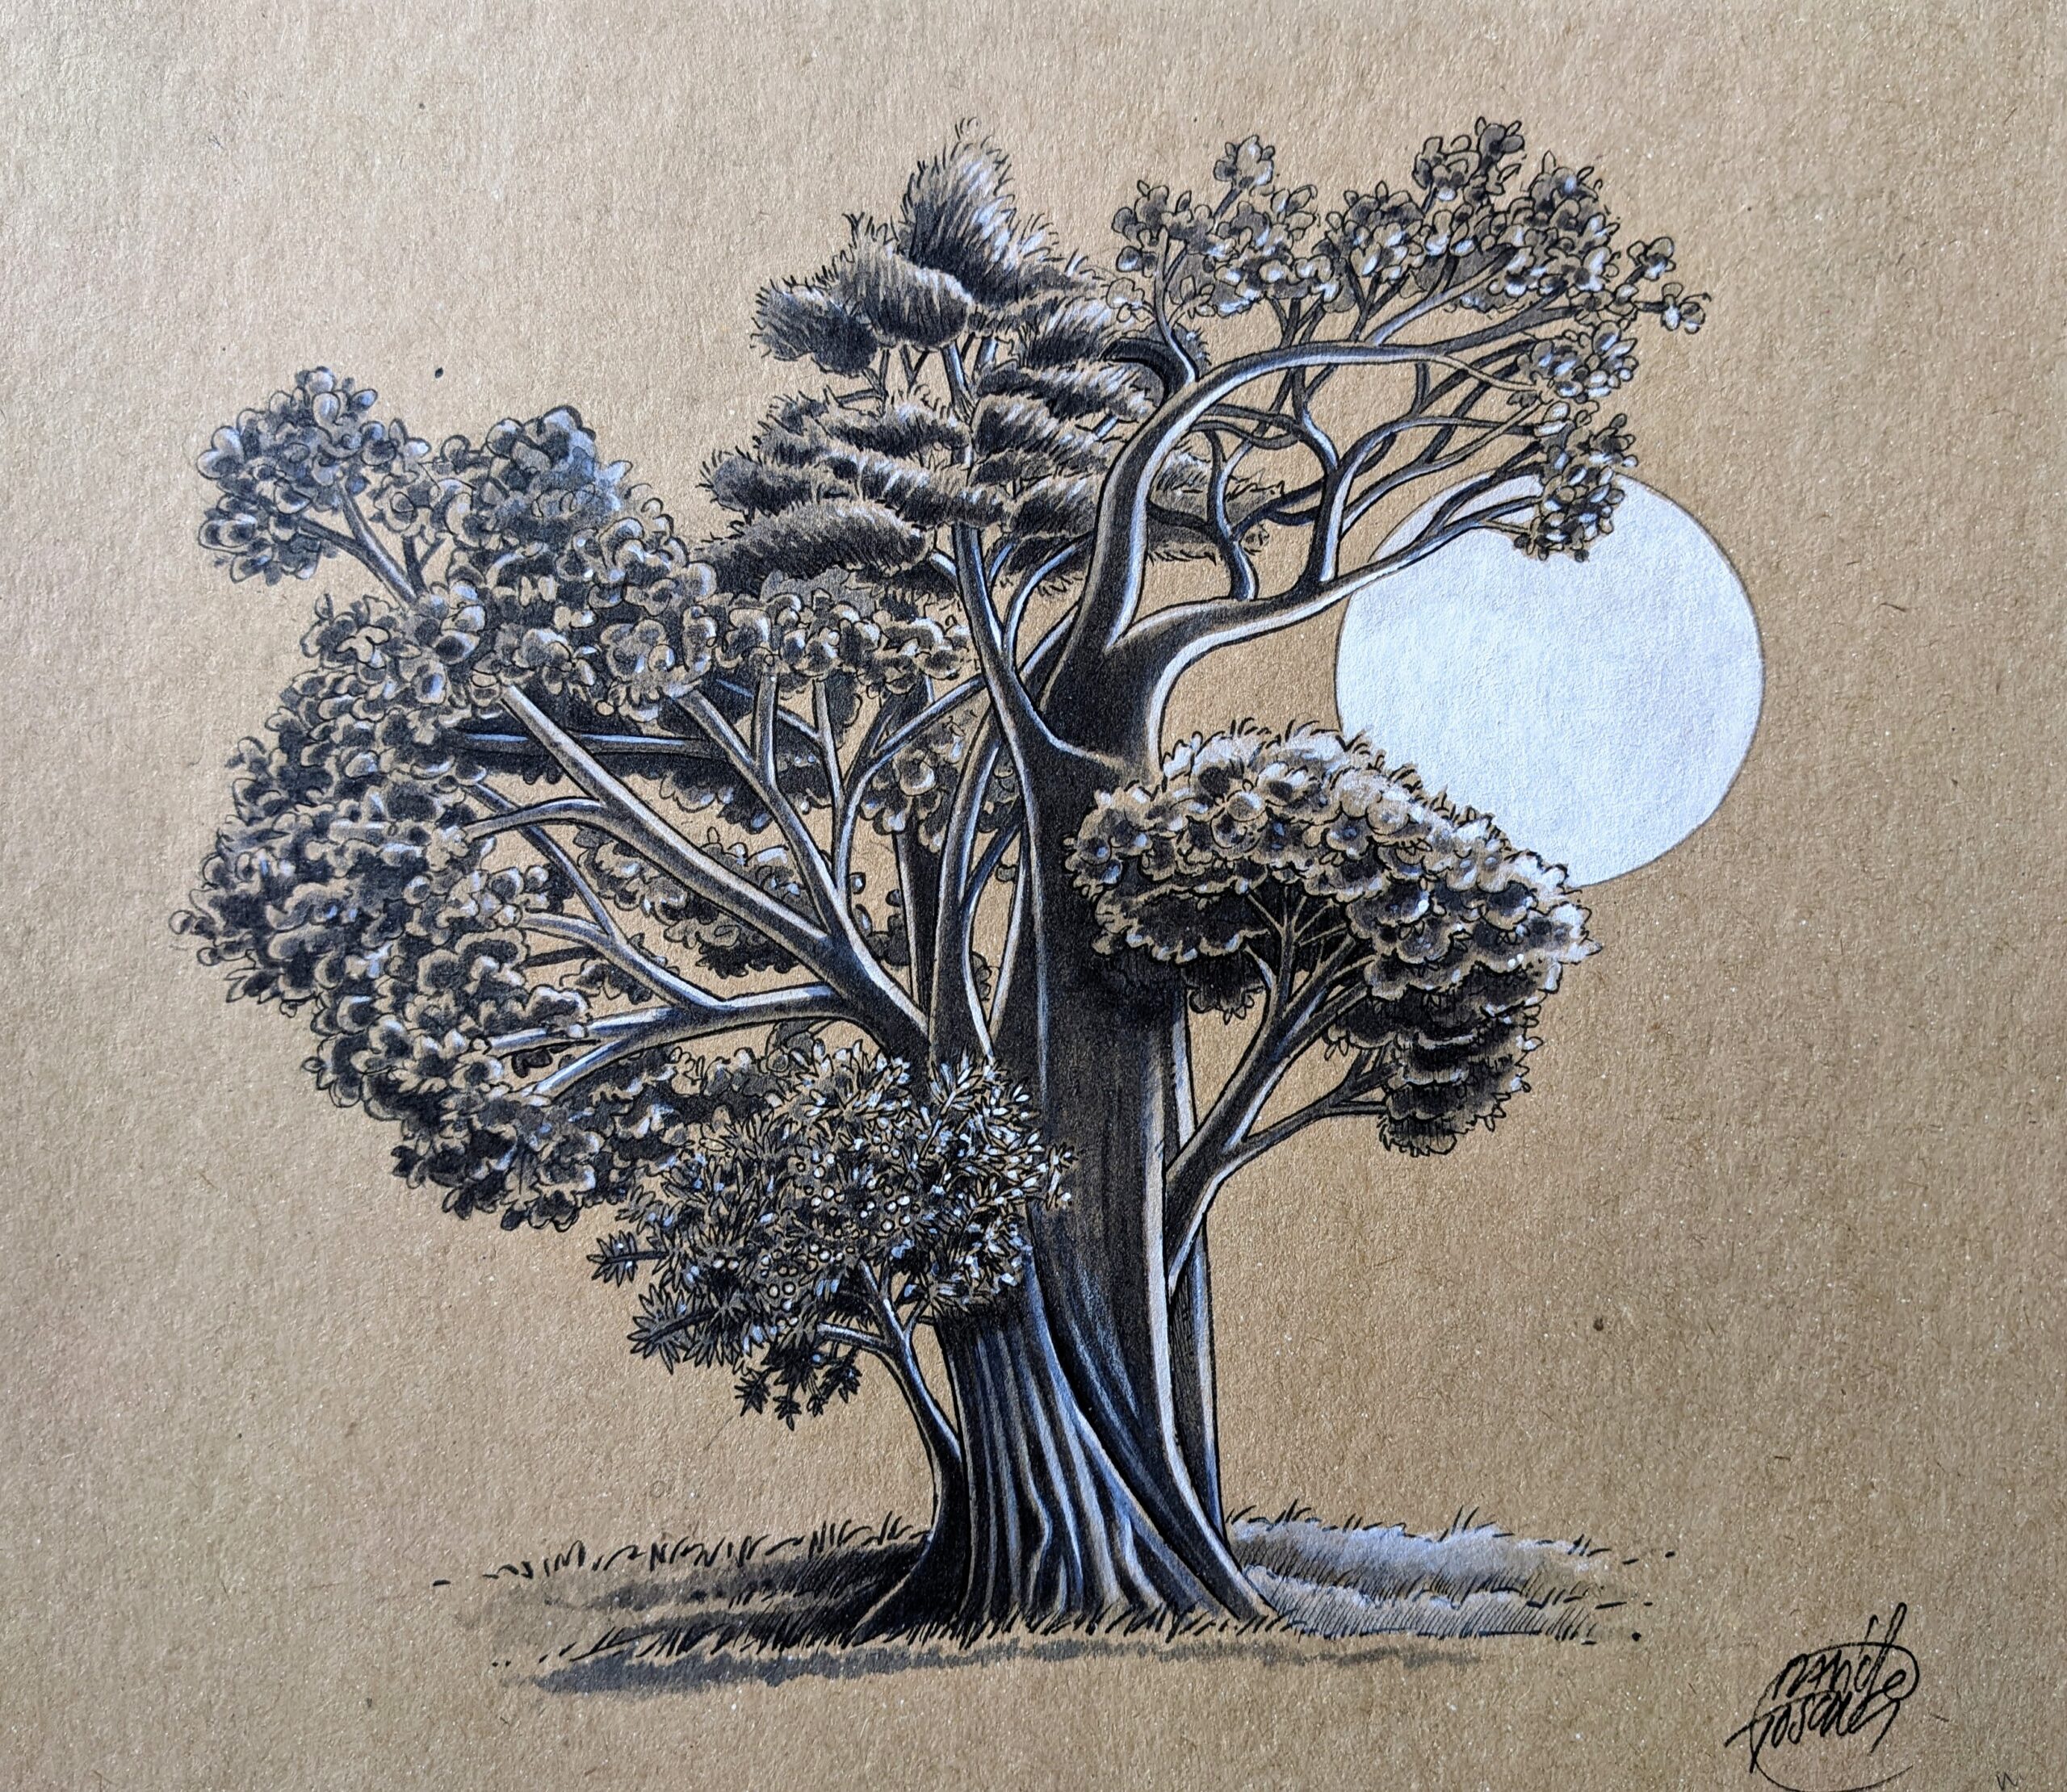 Featured image for “L’albero che vorrei essere”